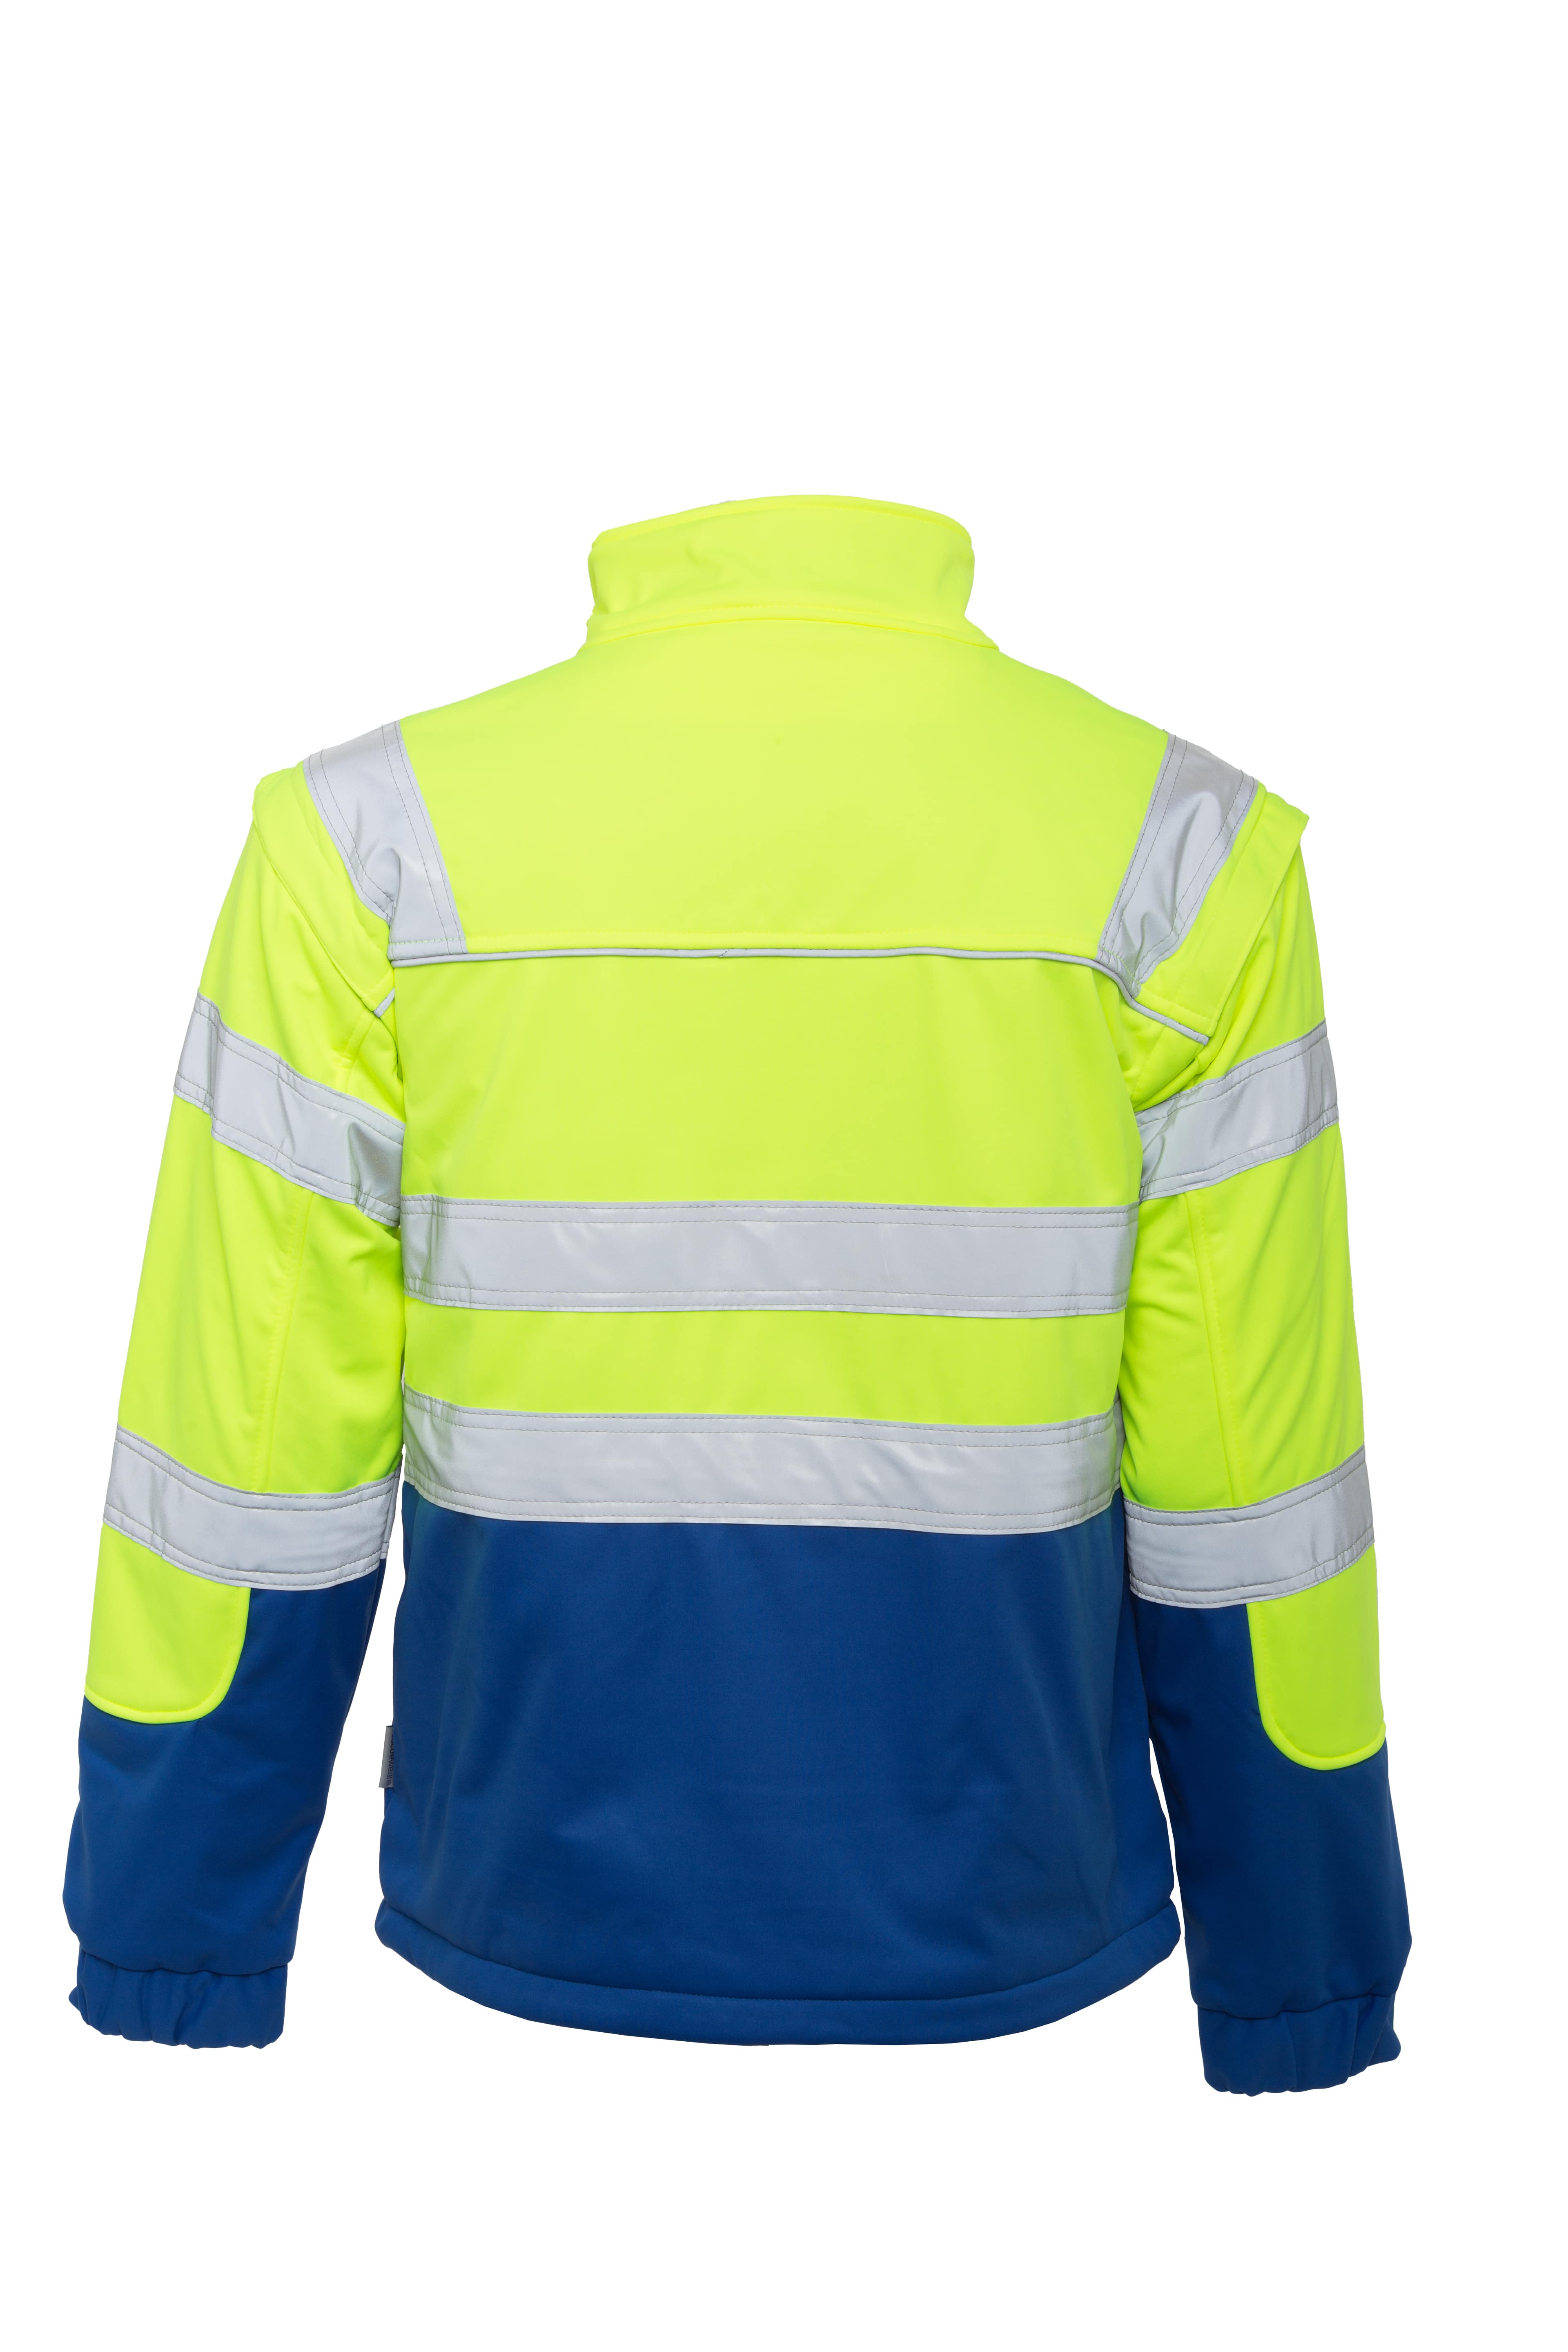 Rescuewear Softshelljacke HiVis Klasse 3 Kobaltblau / Neon Gelb - XL